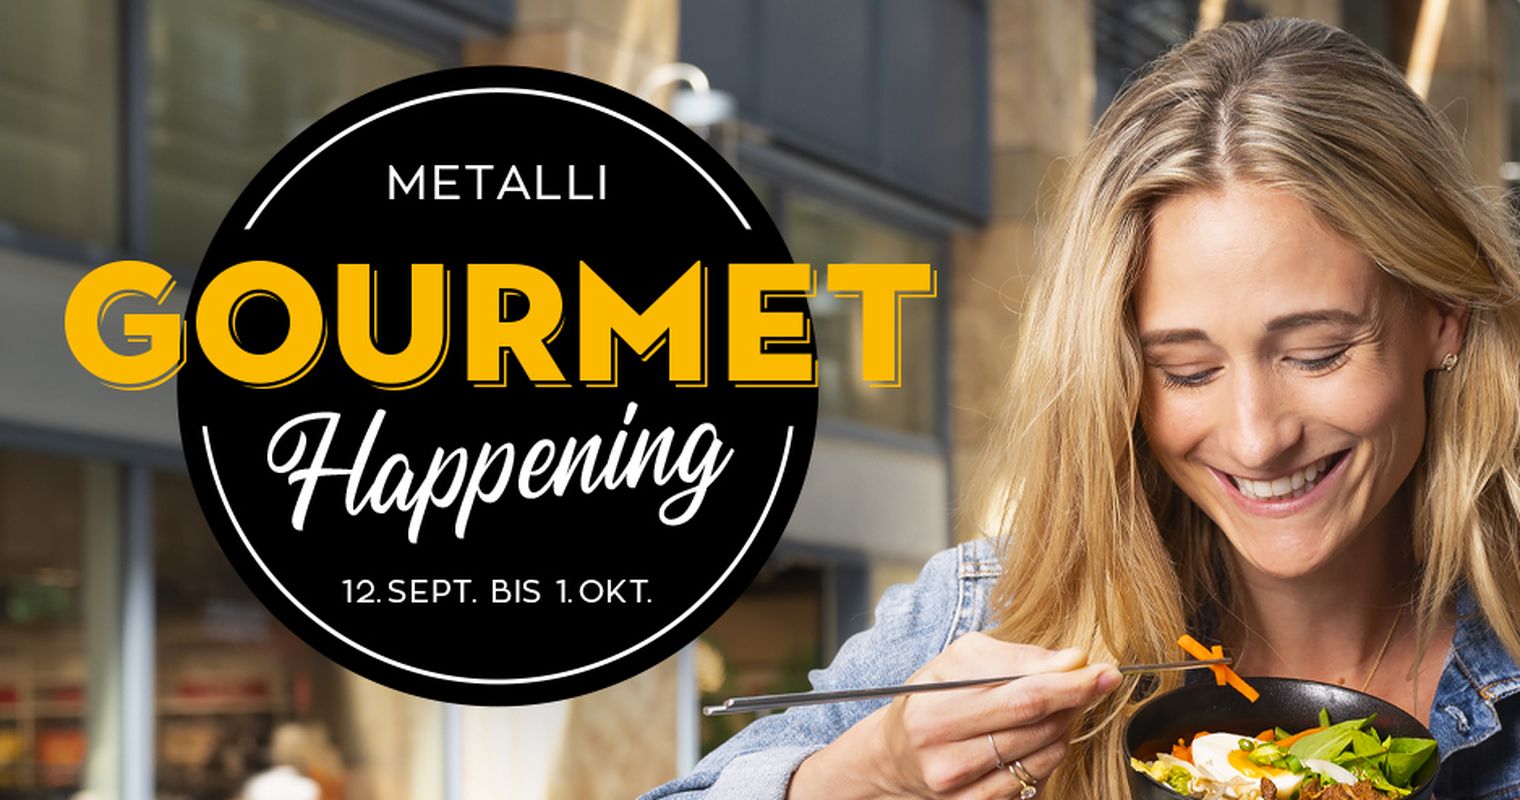 Gourmet-Happening in der Metalli